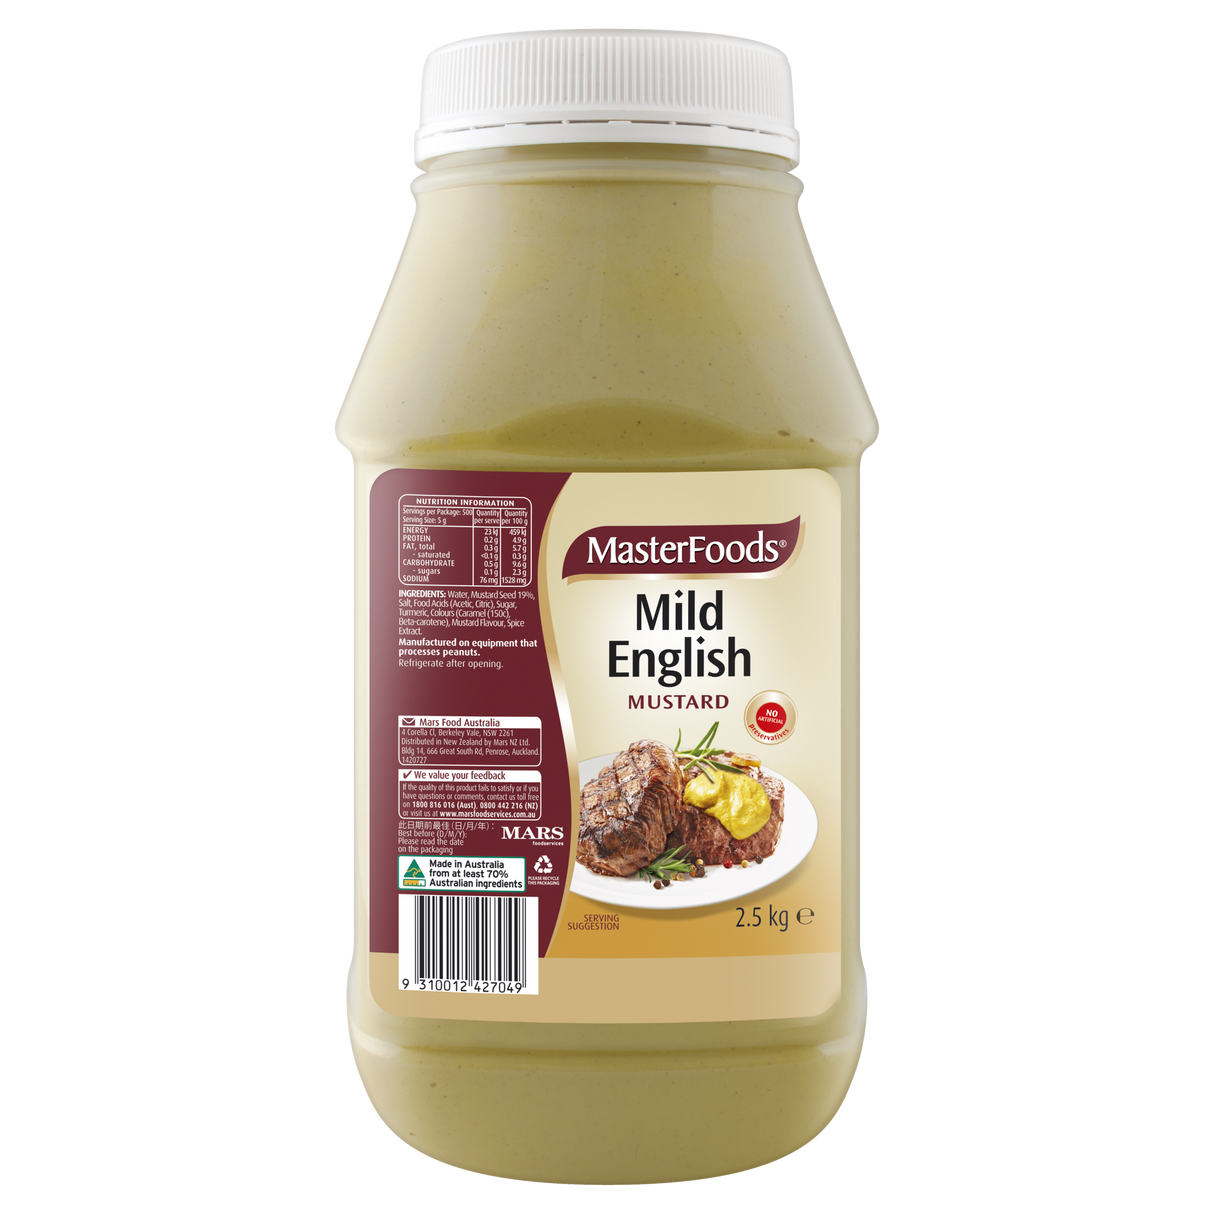 MasterFoods Mild English Mustard 2.5kg